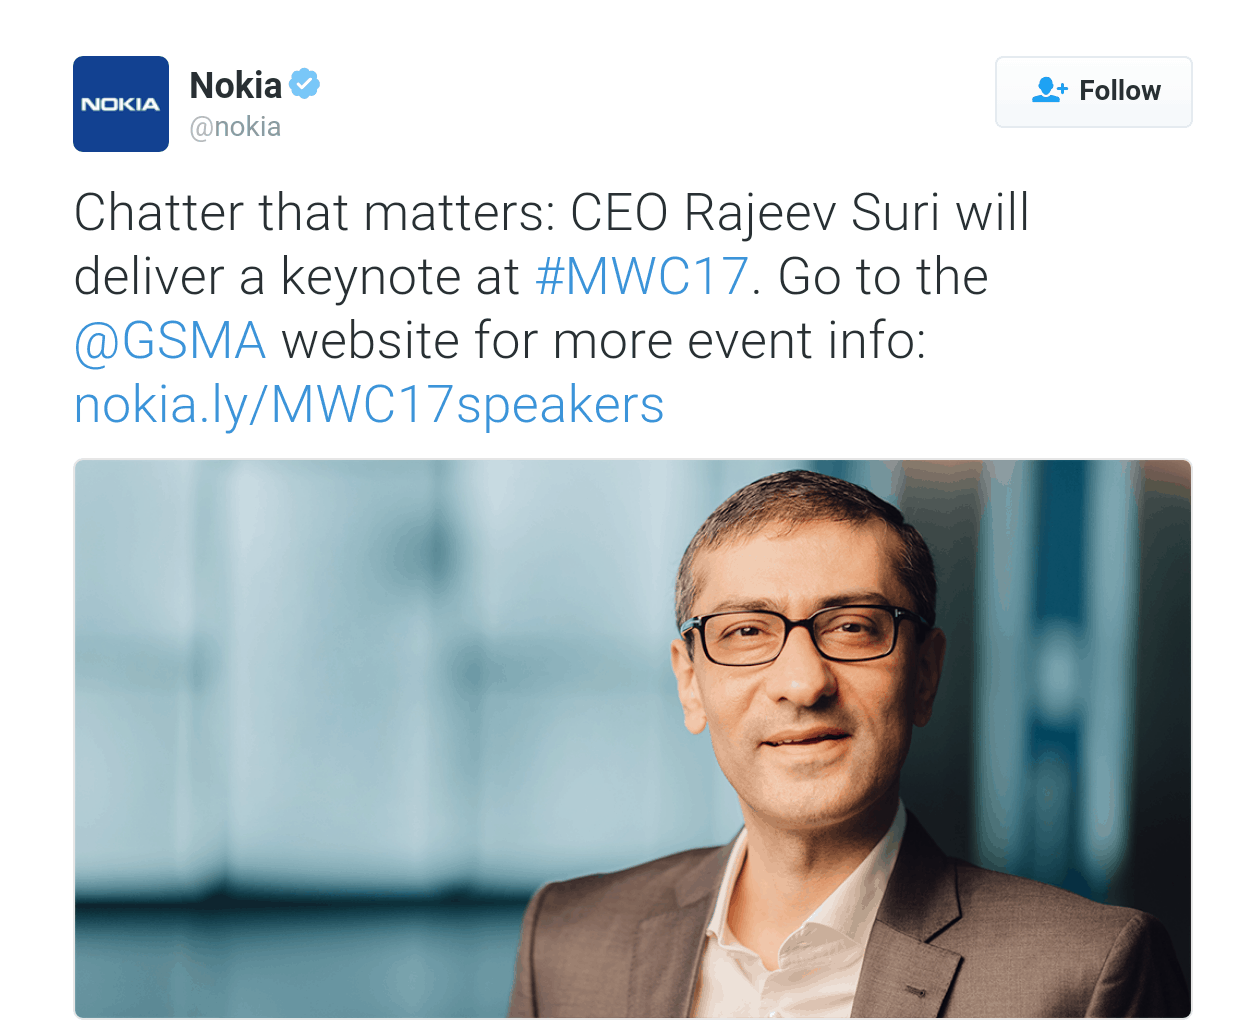 Nokia confirms